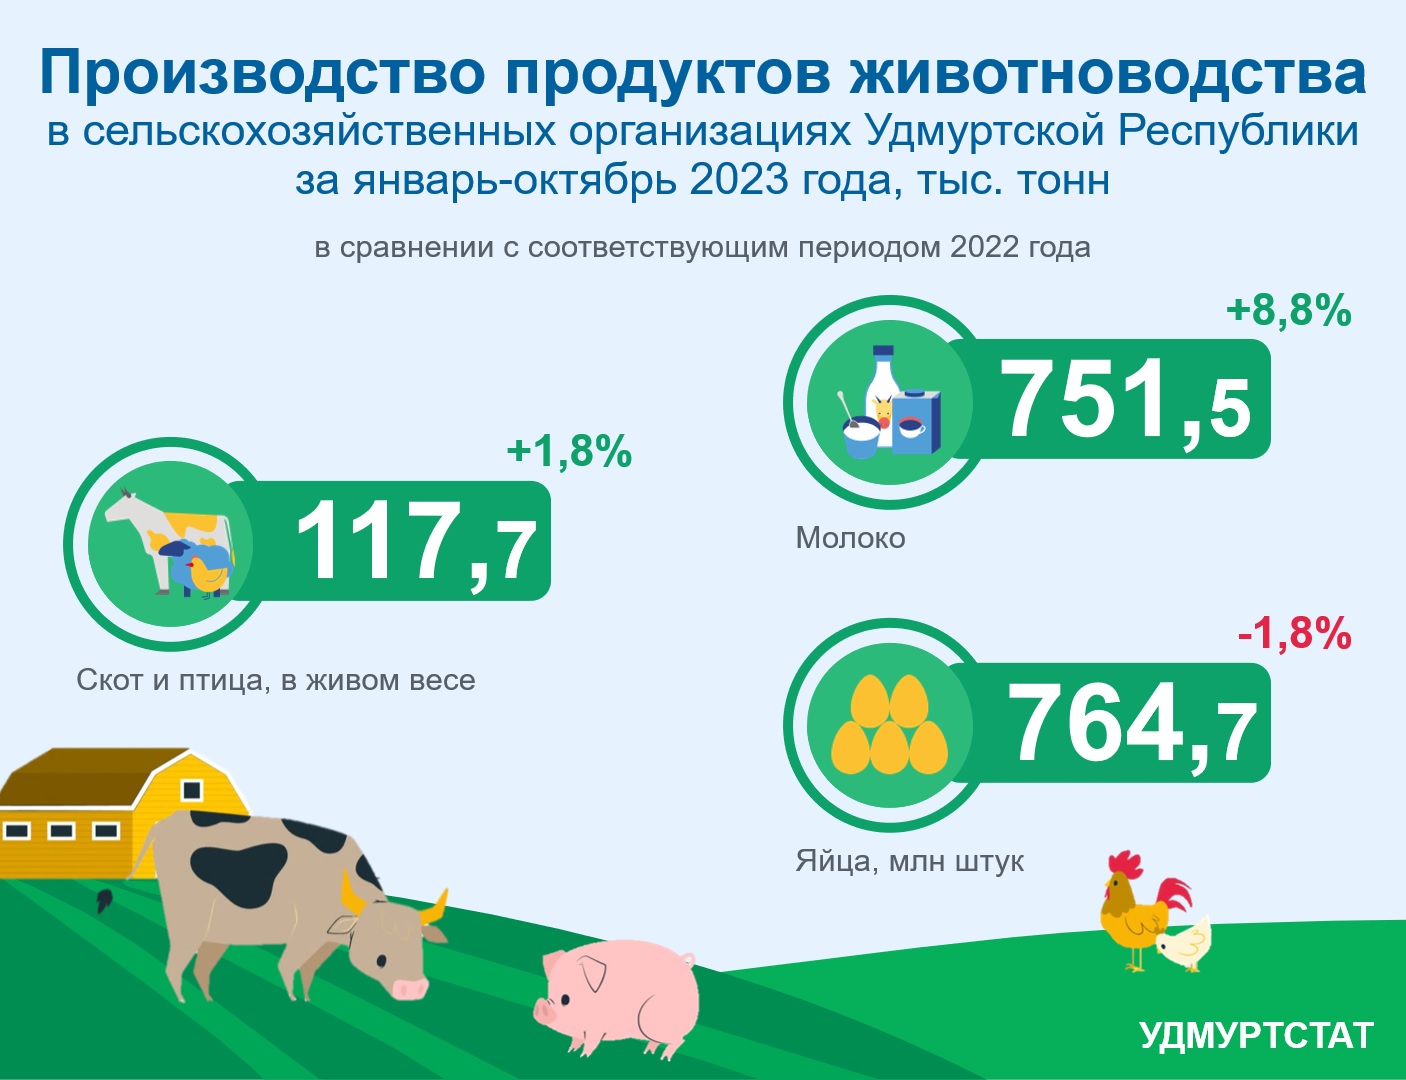 Производство продуктов животноводства за январь-октябрь 2023 года.